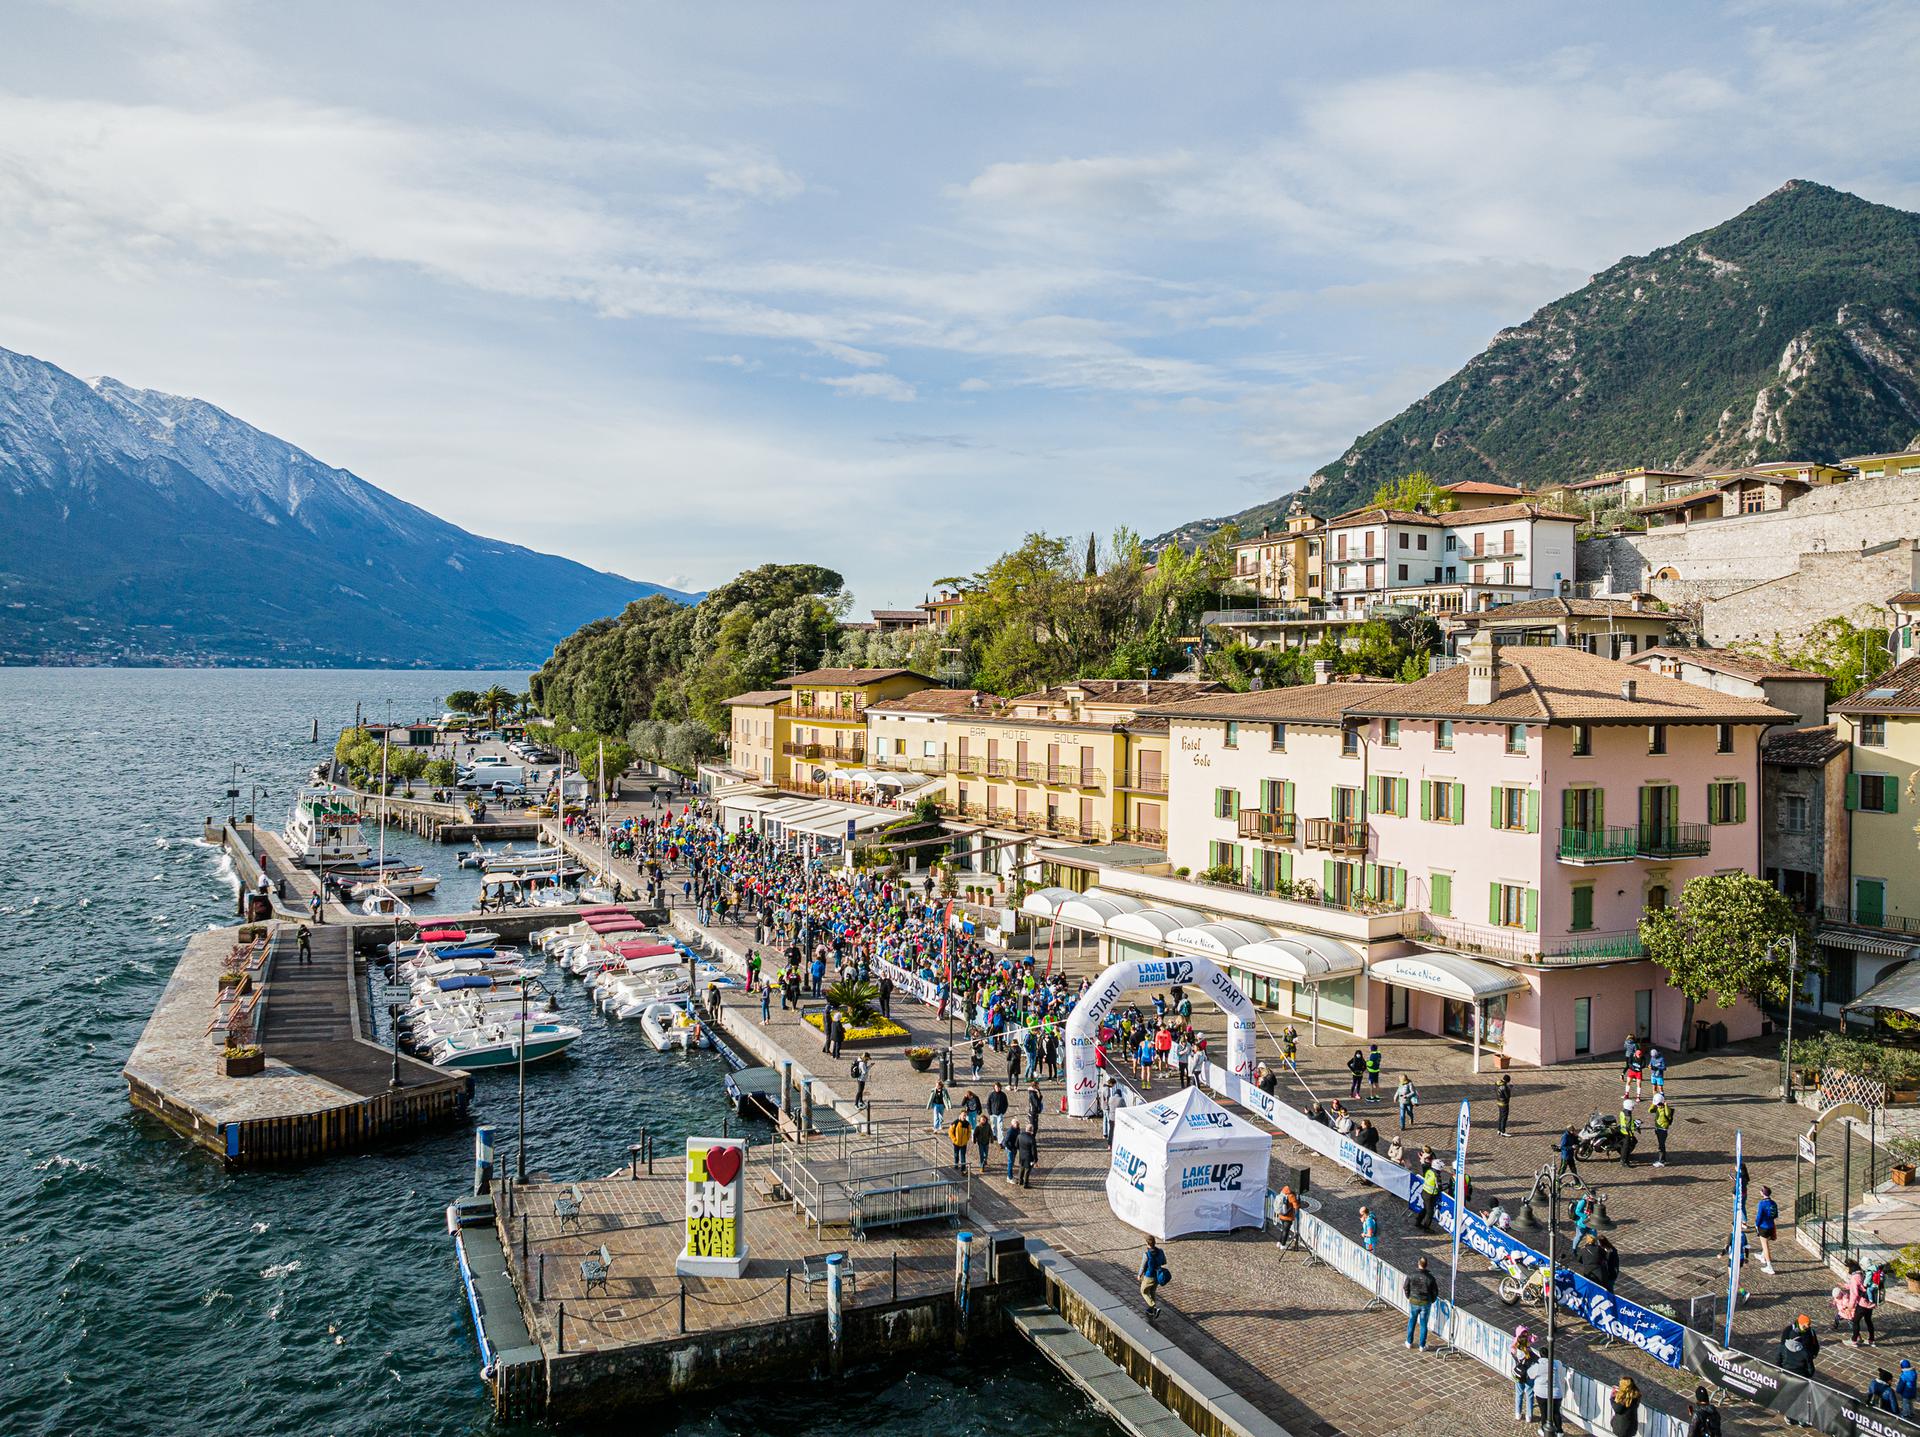 Domenica la seconda edizione della X-Bionic Lake Garda 42: 2700 gli iscritti in gara da 62 nazioni fra Limone e Malcesine. Ecco tutte le info utili